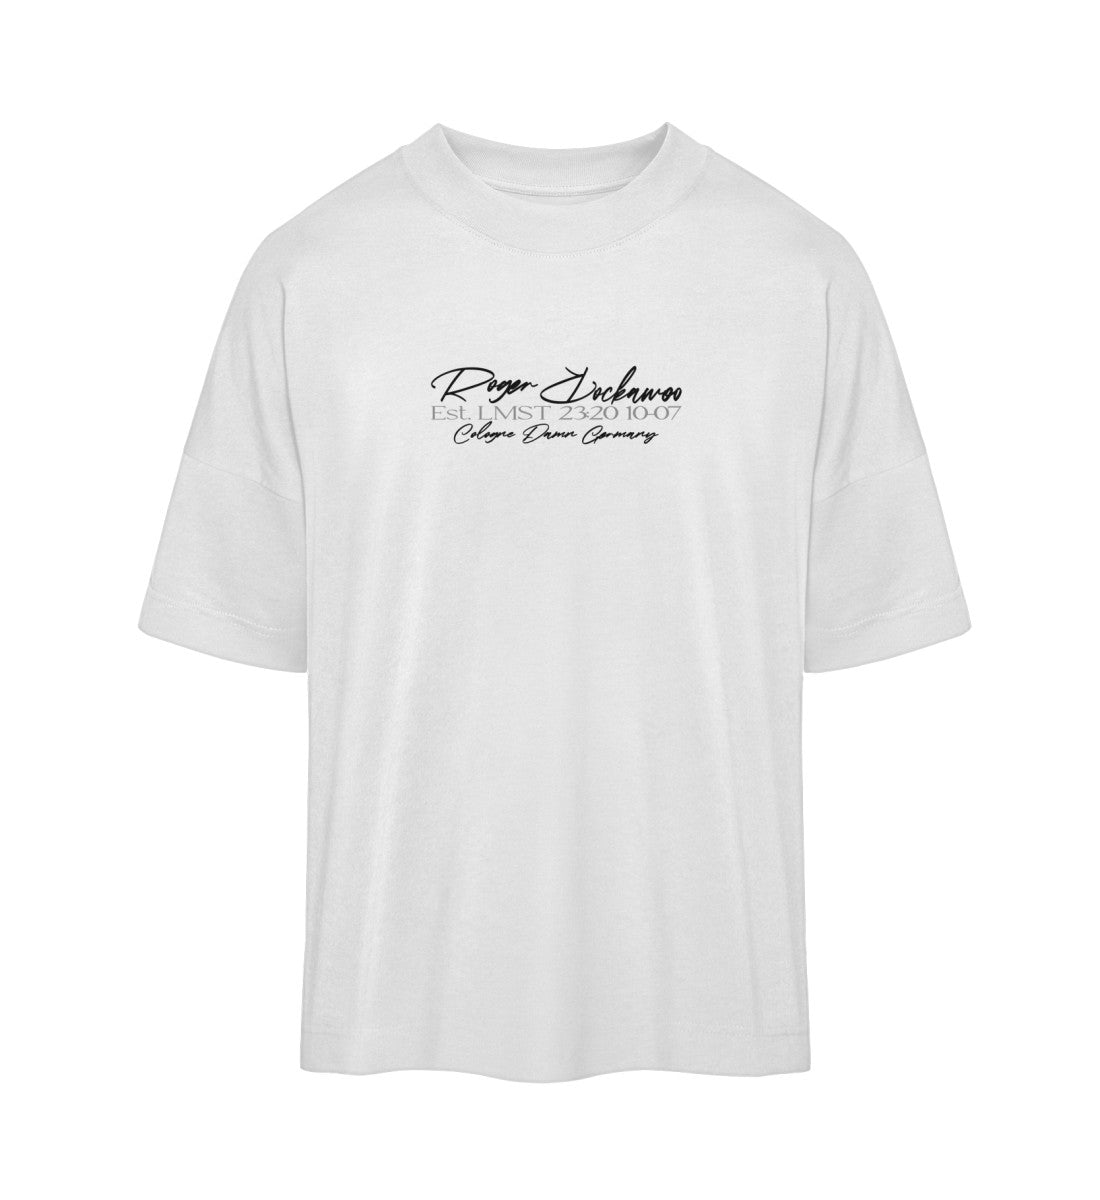 Weißes Oversize T-Shirt für Frauen und Männer bedruckt mit dem Design der Roger Rockawoo Kollektion Surf where wet dreams become true